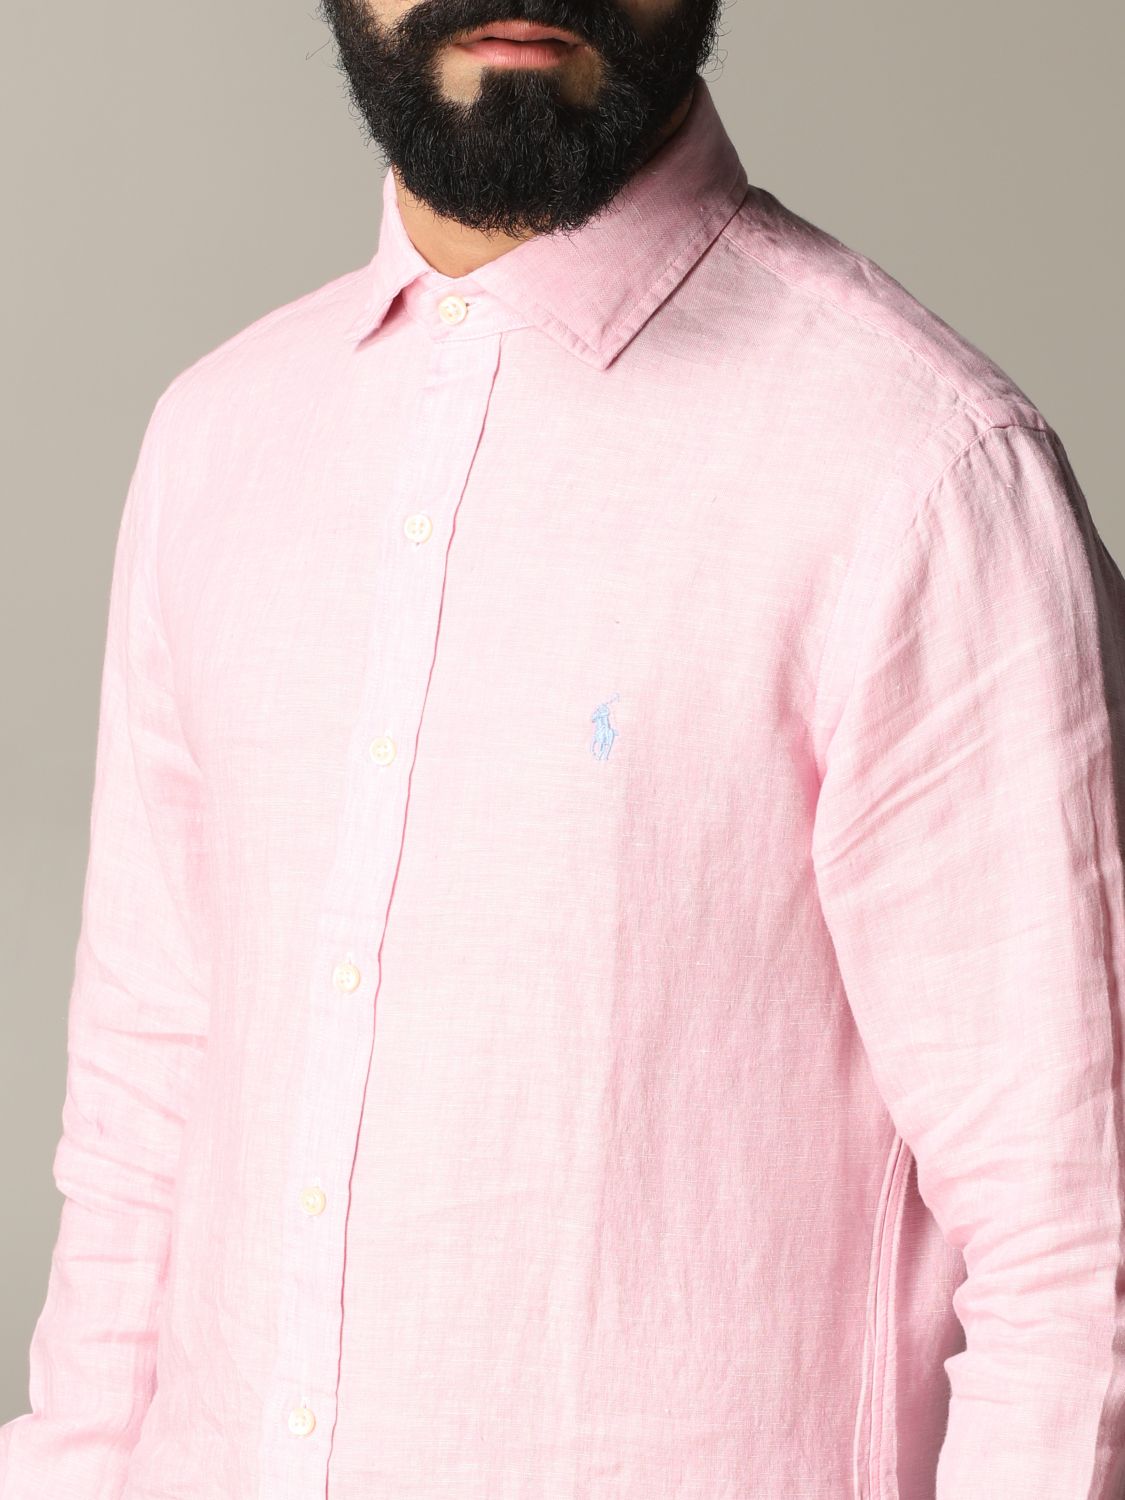 Shirt Polo Ralph Lauren: Polo Ralph Lauren shirt for men pink 5